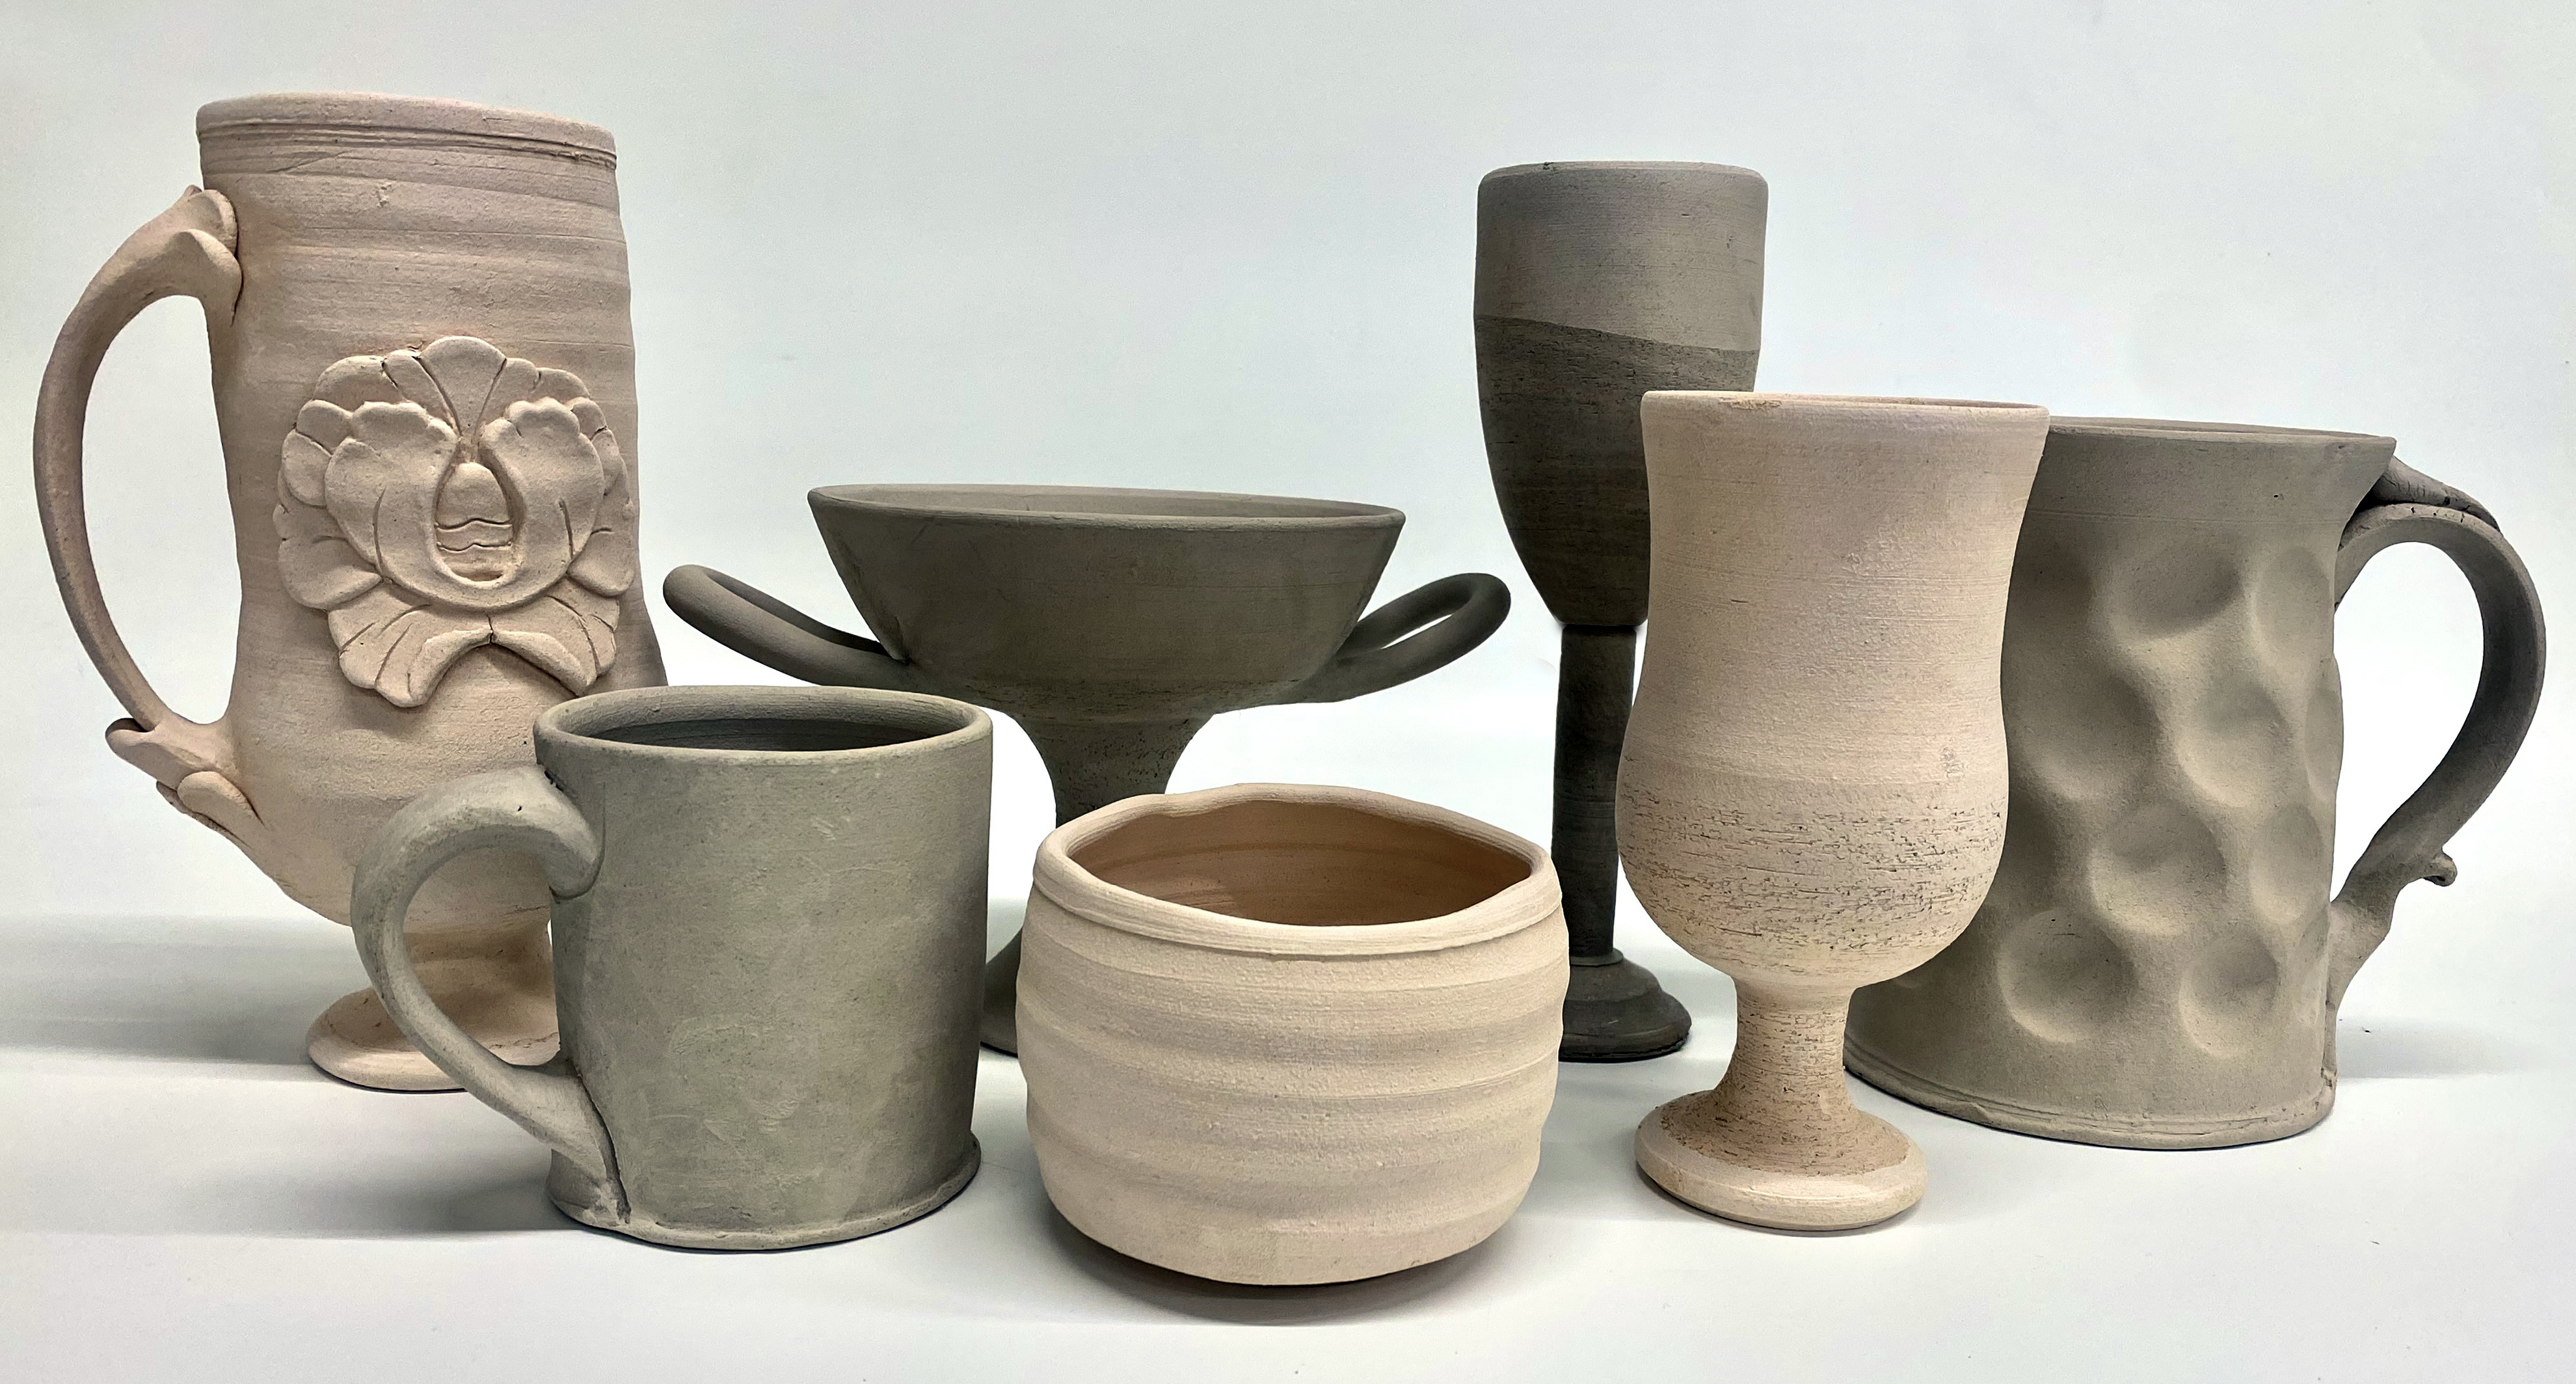 pottery making classes okc